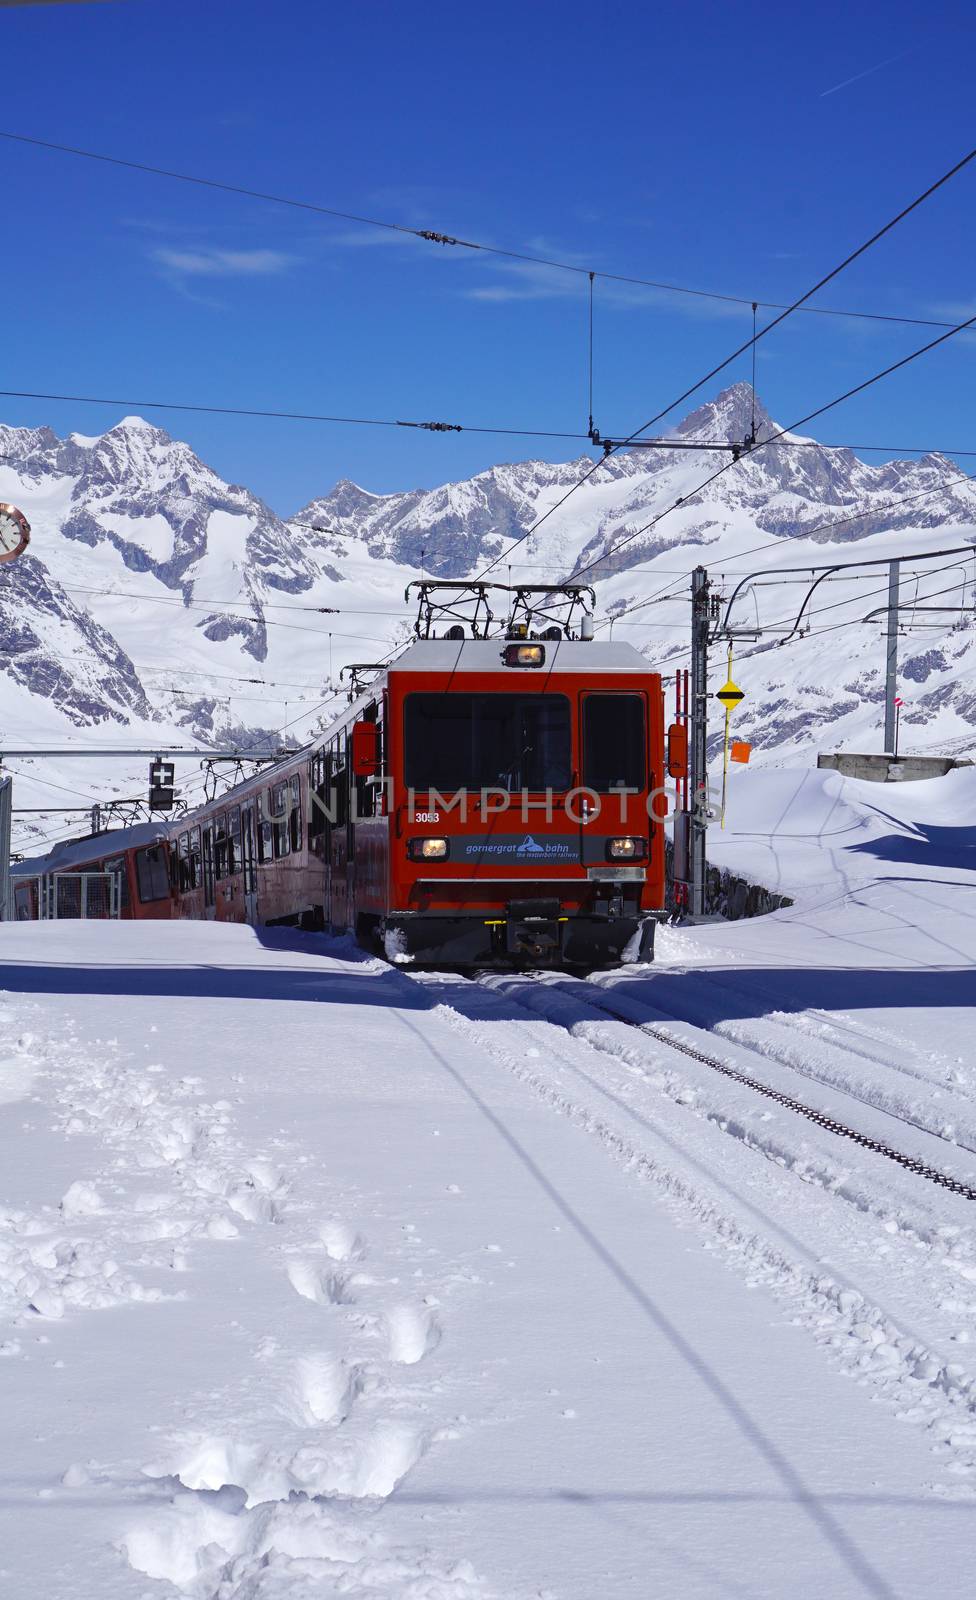 Scene of train running at Gornergrat station, Matterhorn, Zermatt, Switzerland